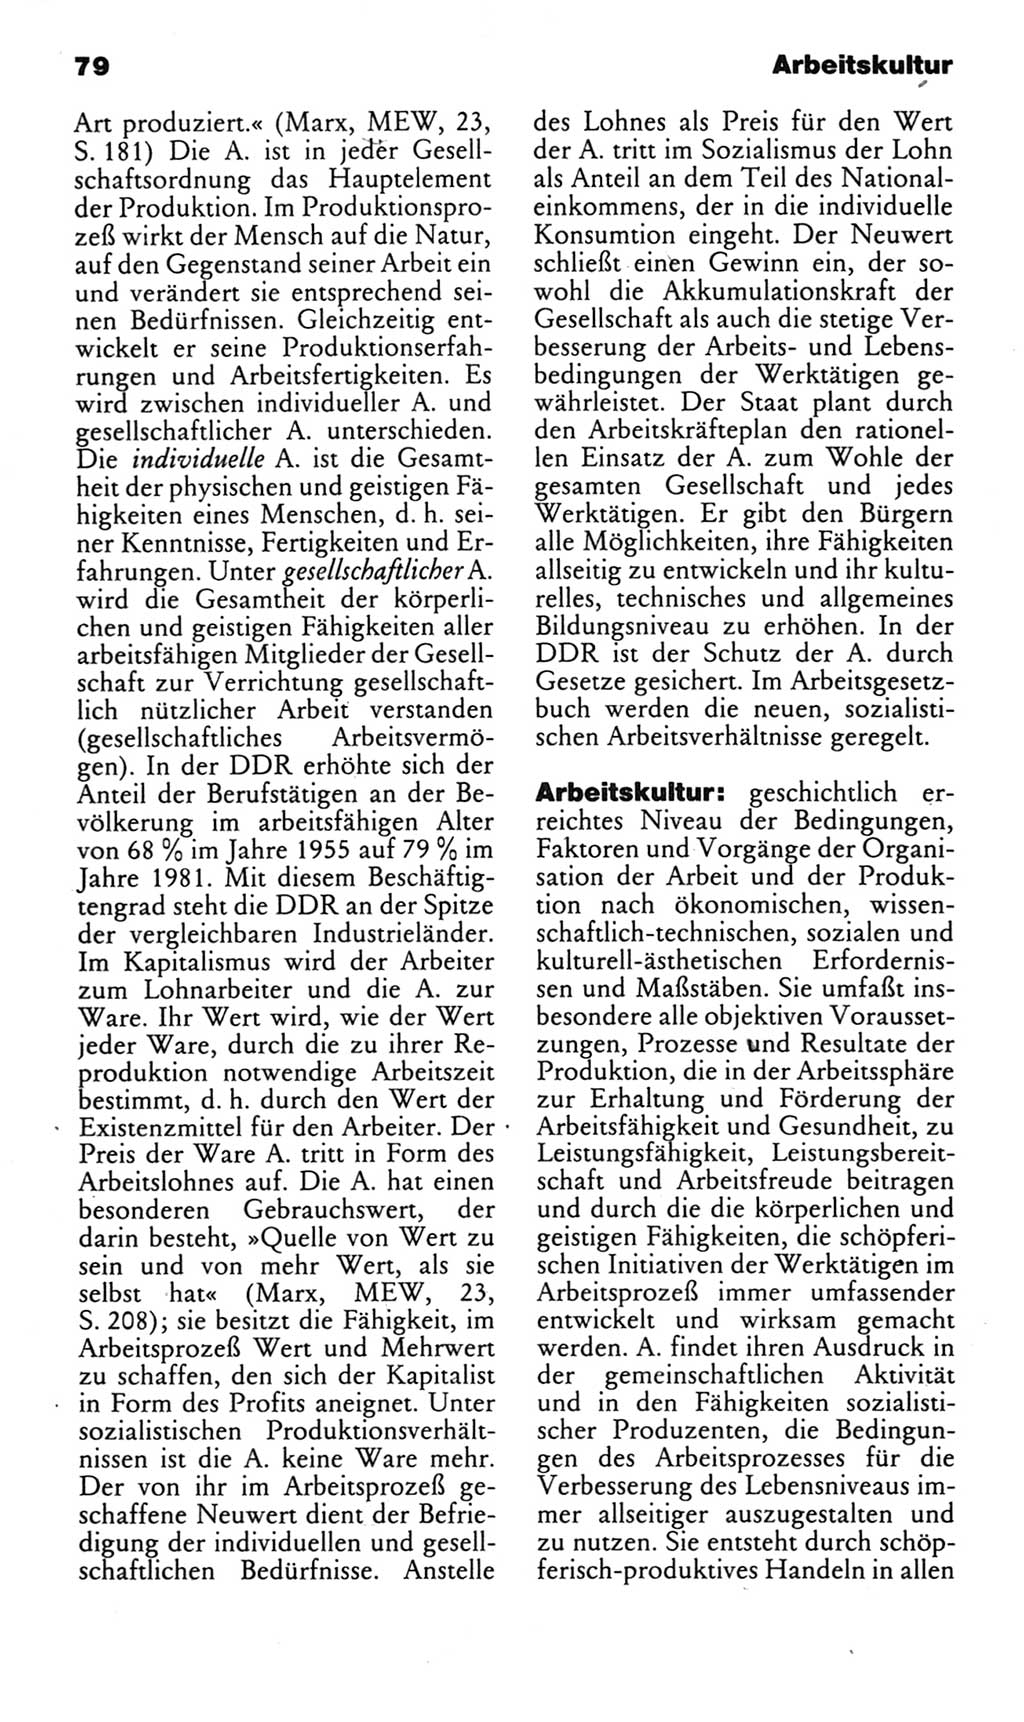 Kleines politisches Wörterbuch [Deutsche Demokratische Republik (DDR)] 1983, Seite 79 (Kl. pol. Wb. DDR 1983, S. 79)